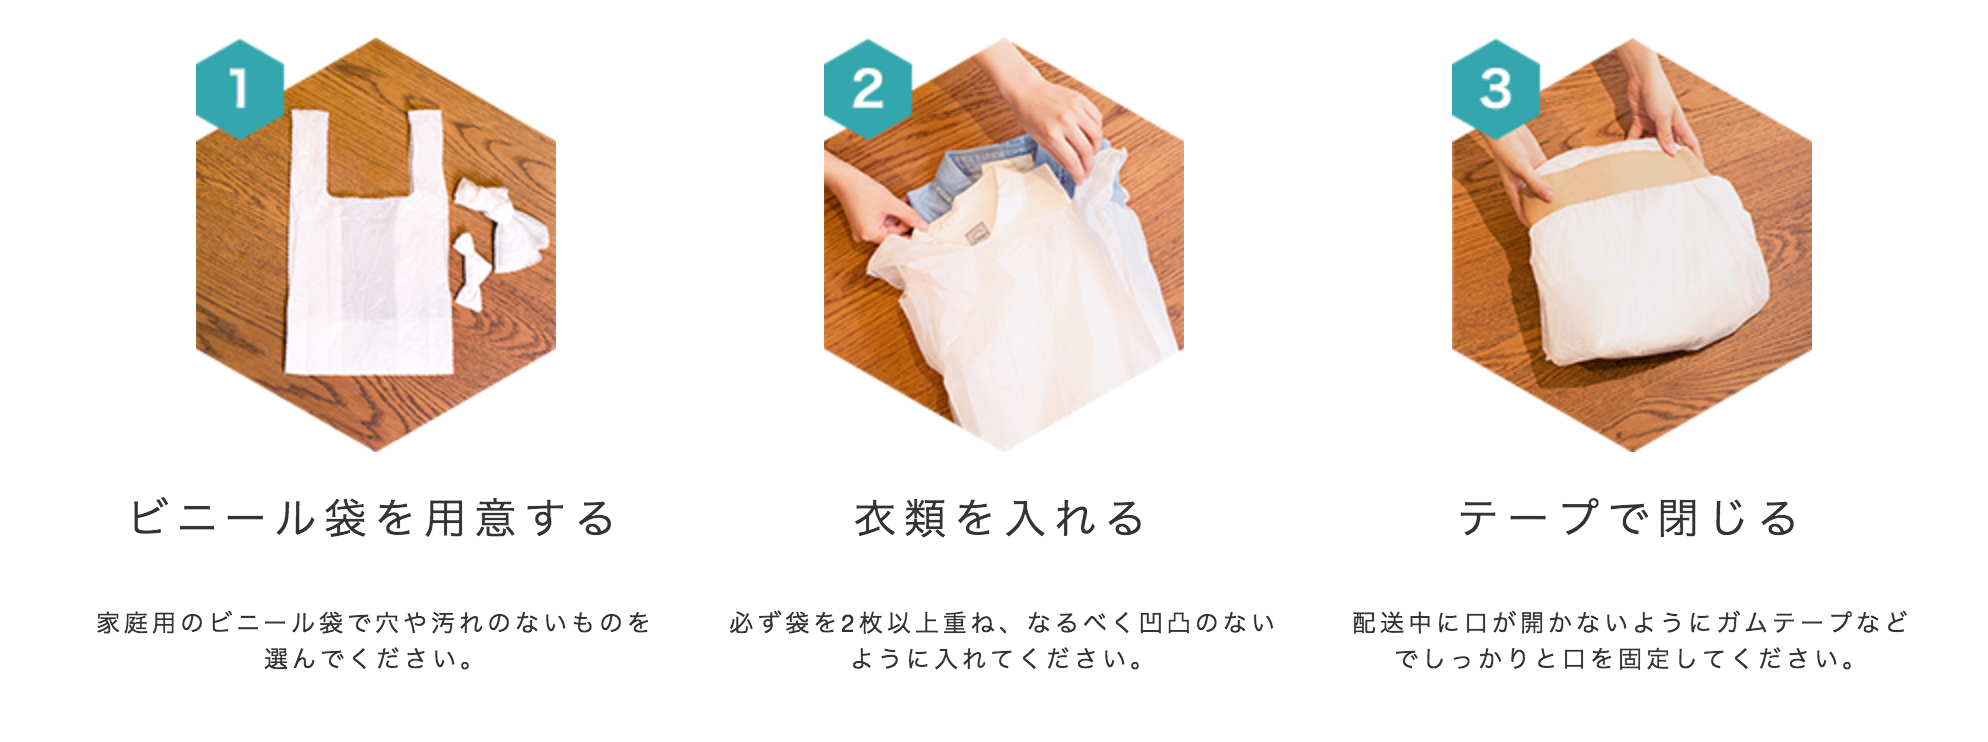 ビニール袋で梱包する方法